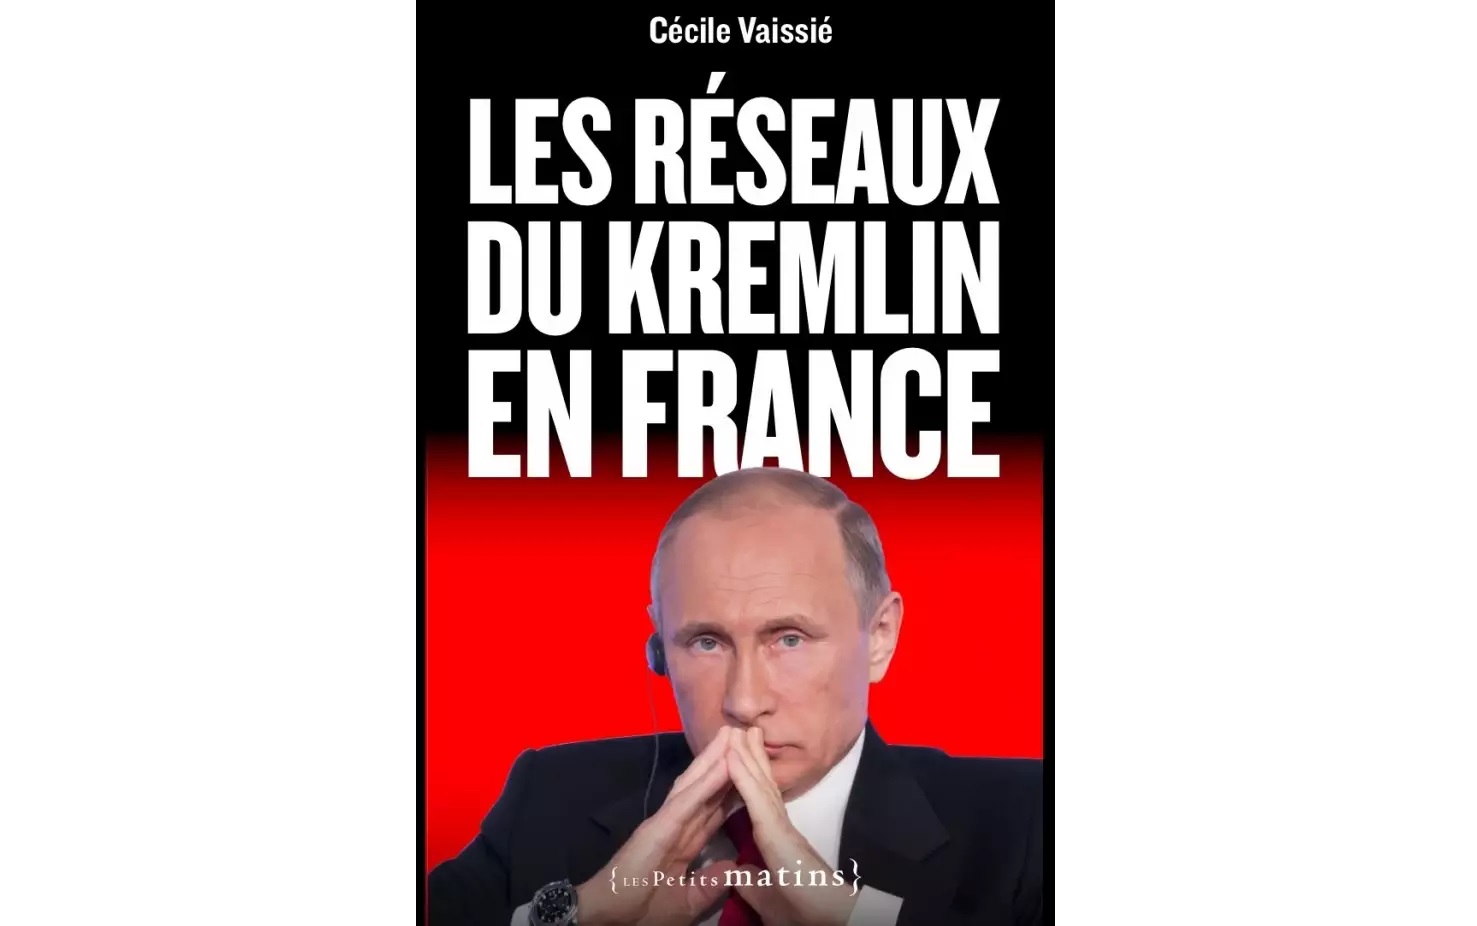 Book details Kremlin’s influence networks in France